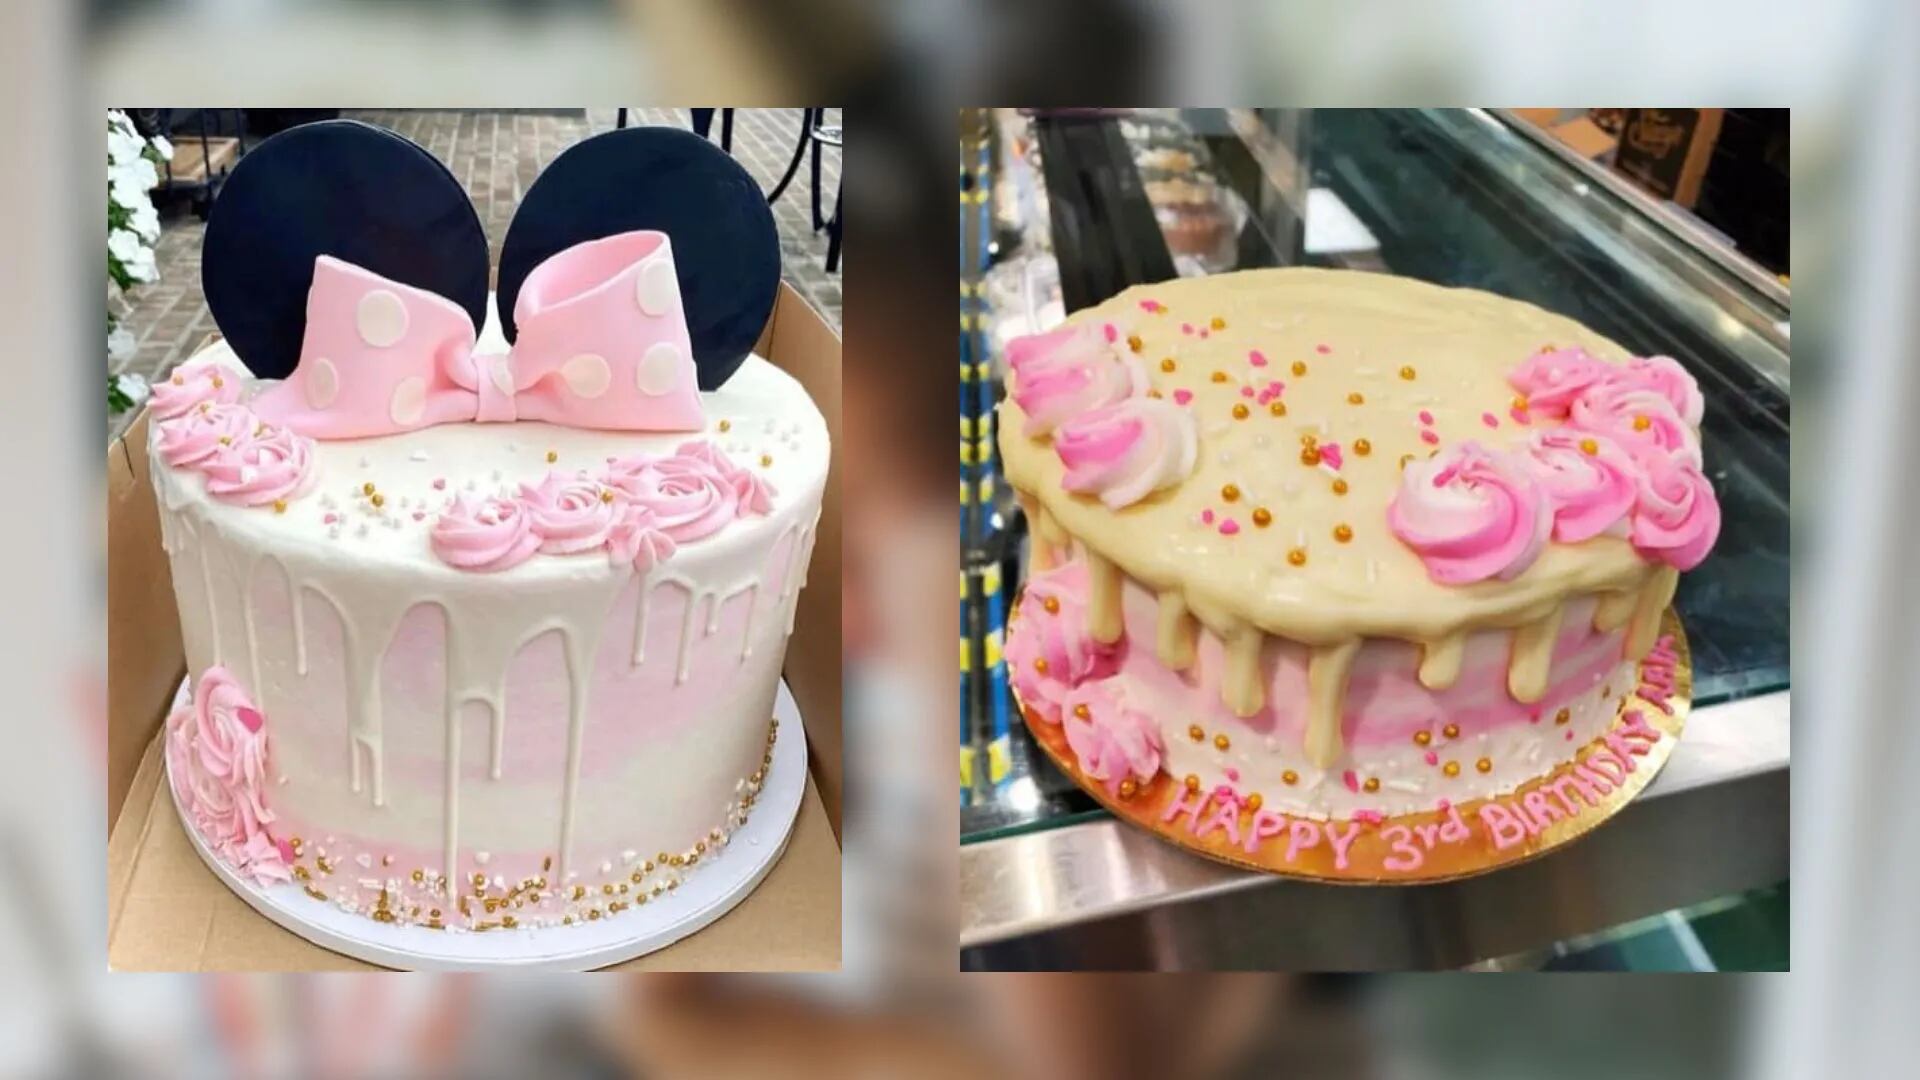 Encargó una torta de Minnie, el pastelero quiso innovar y quedó devastada con lo que le entregaron: "Parece moco"